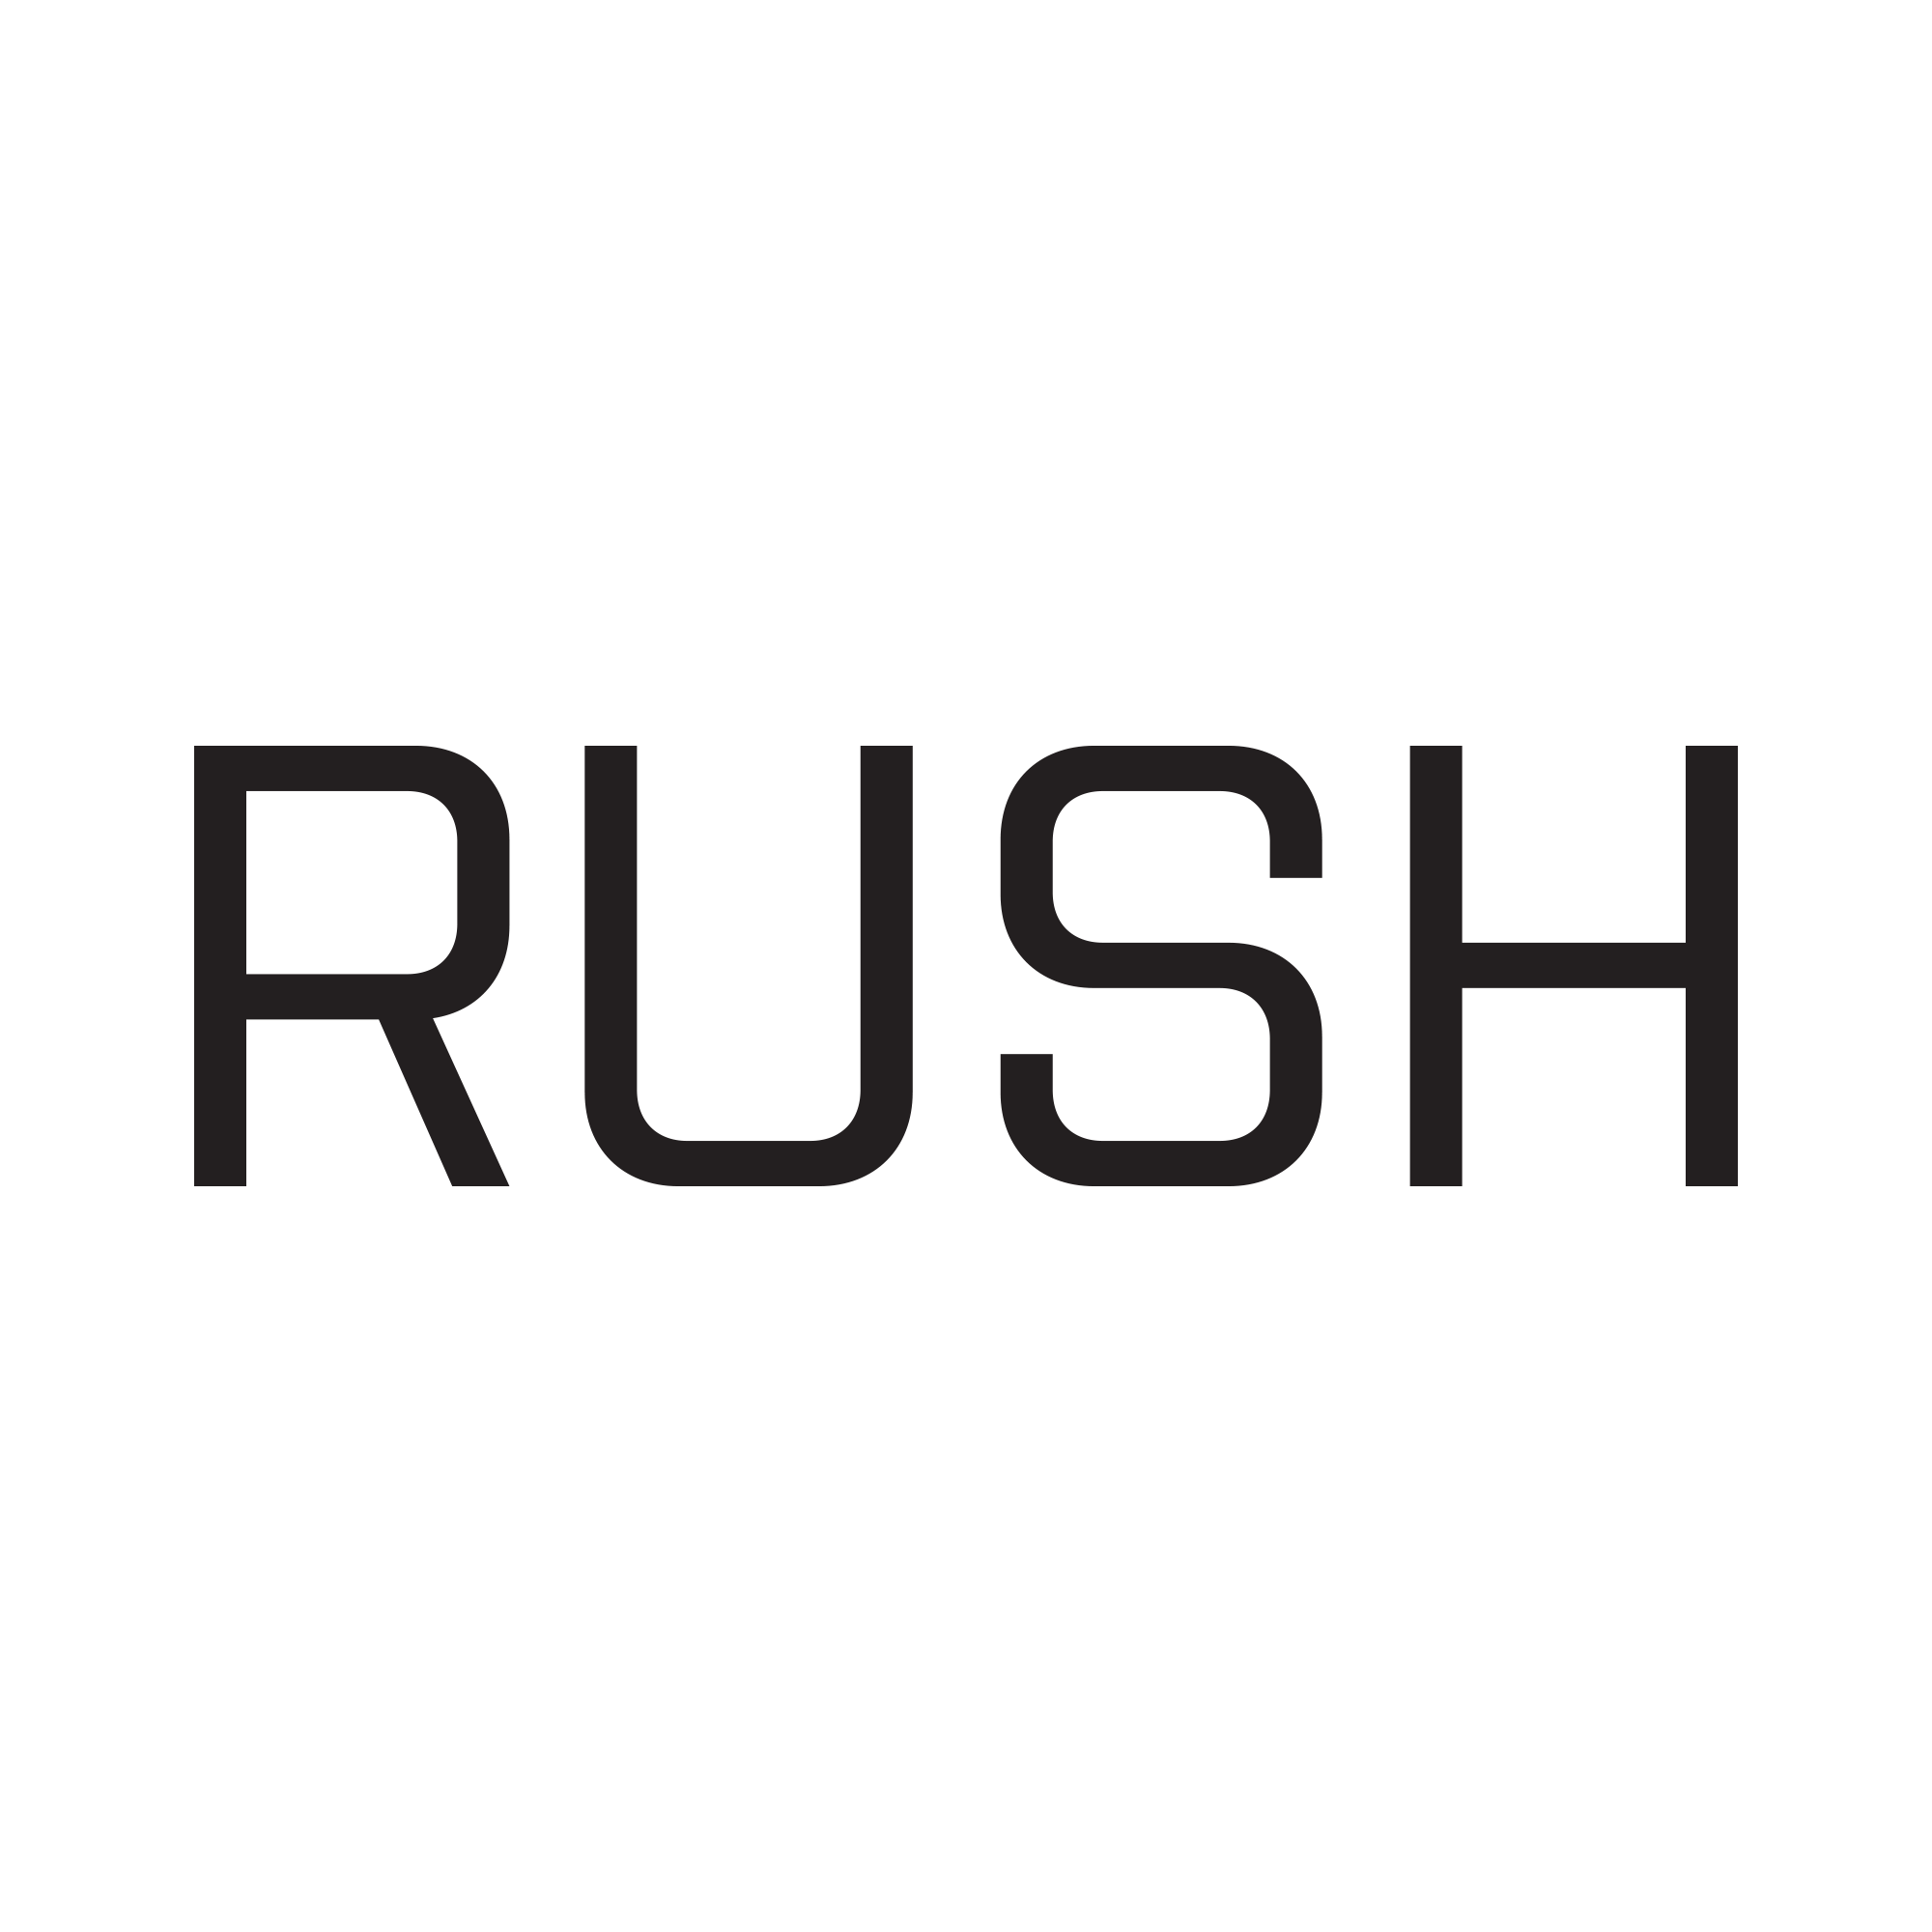 RUSH_rush & HESITATE_hesitate